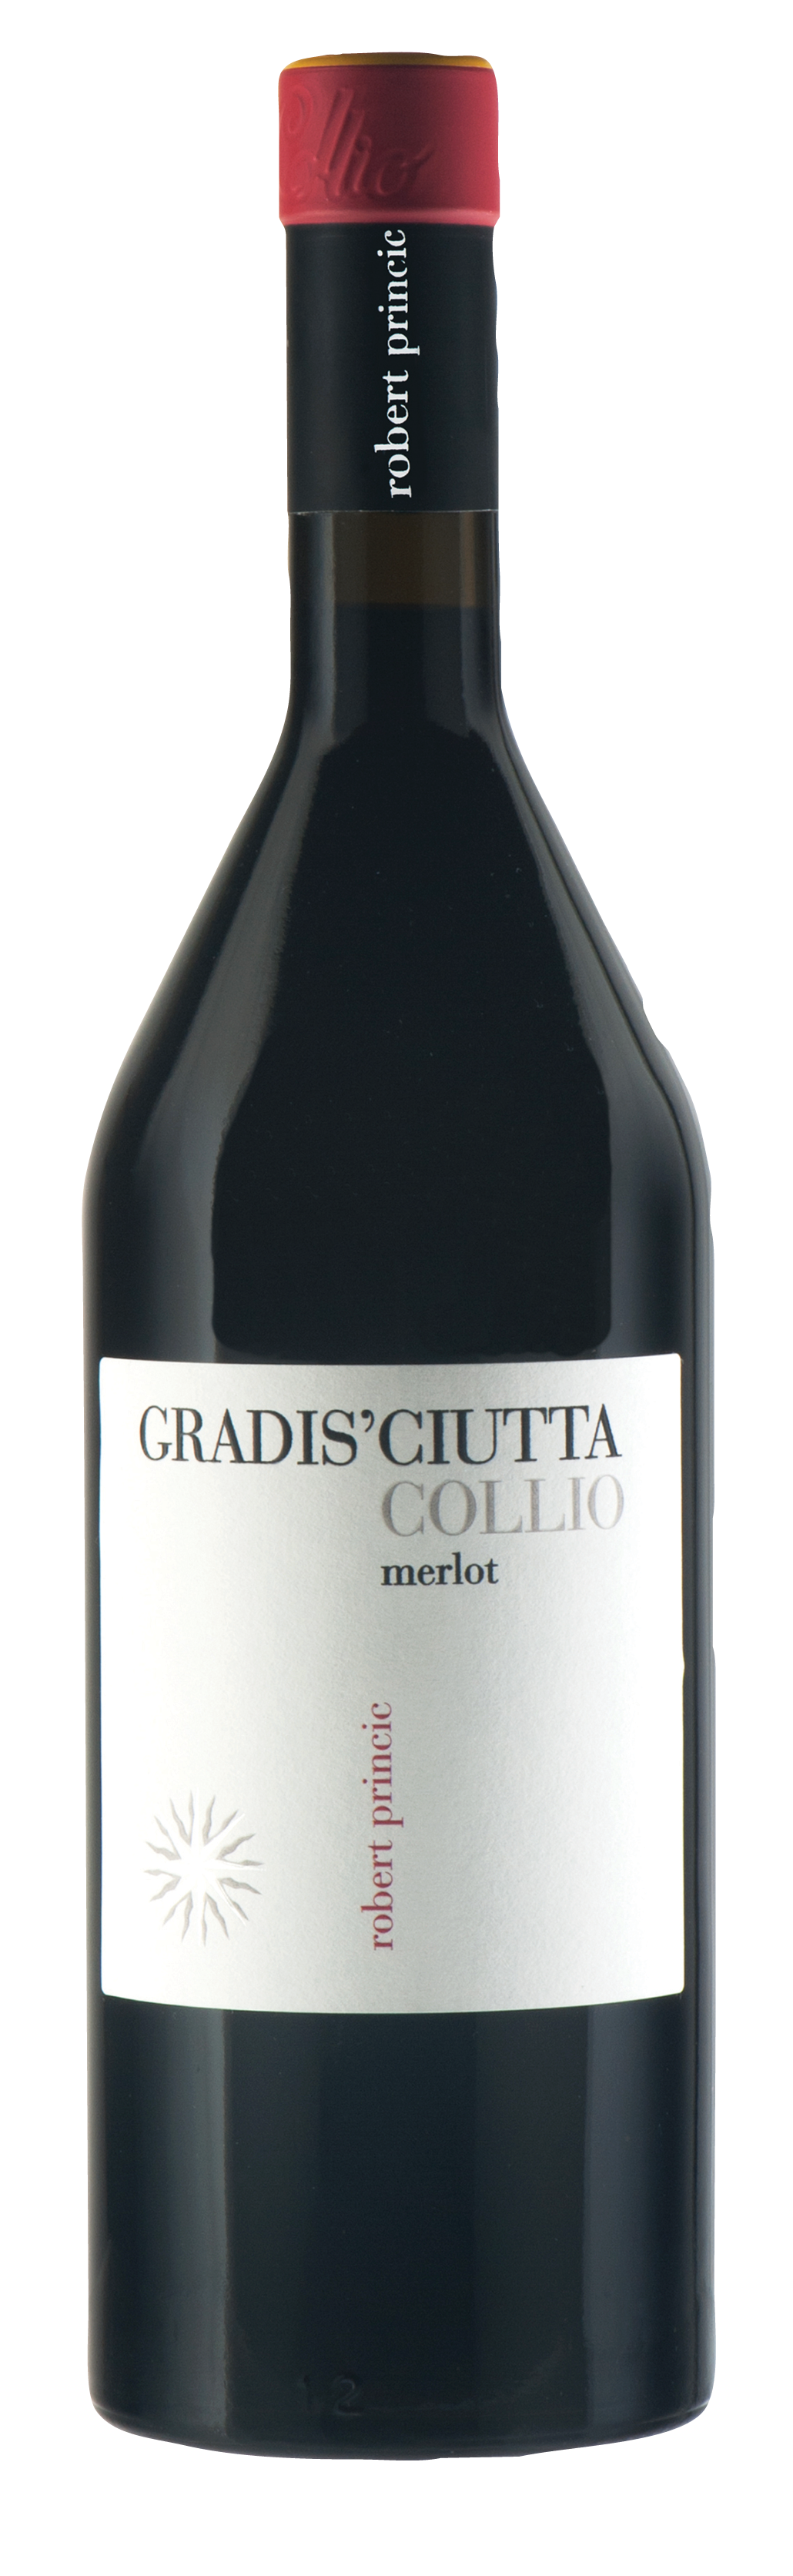 Gradis'ciutta<br />2017 Merlot<br>Italy